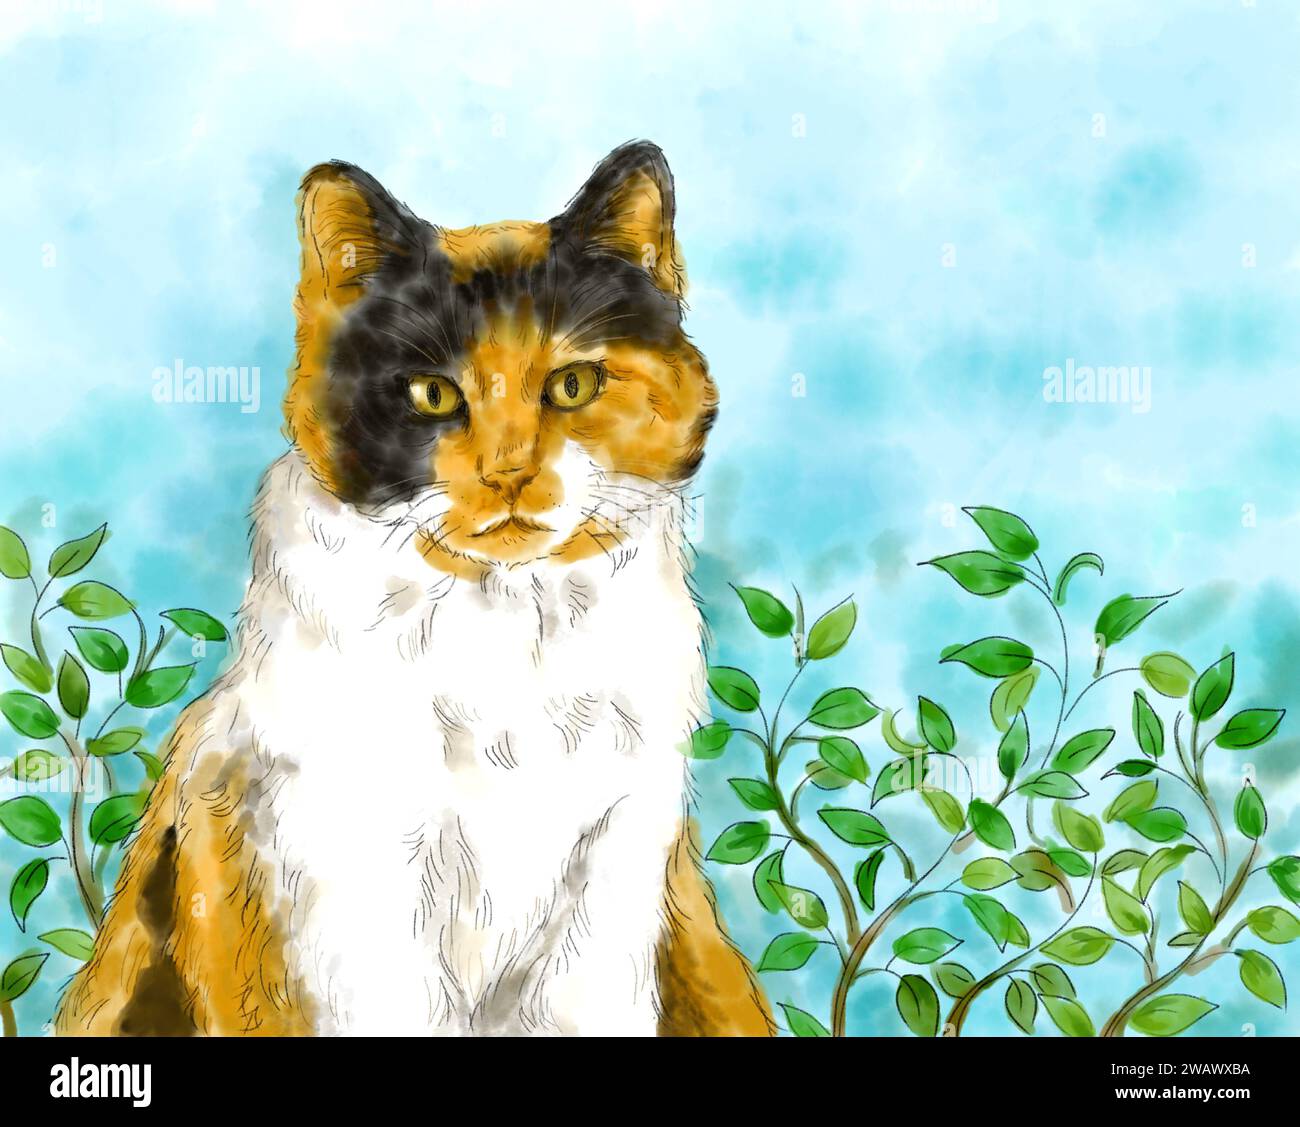 Ritratto di un adorabile gatto Calico seduto in uno sfondo naturale all'aperto. Pittura artistica ad acquerello disegnata a mano. Concetto di animale domestico. Foto Stock